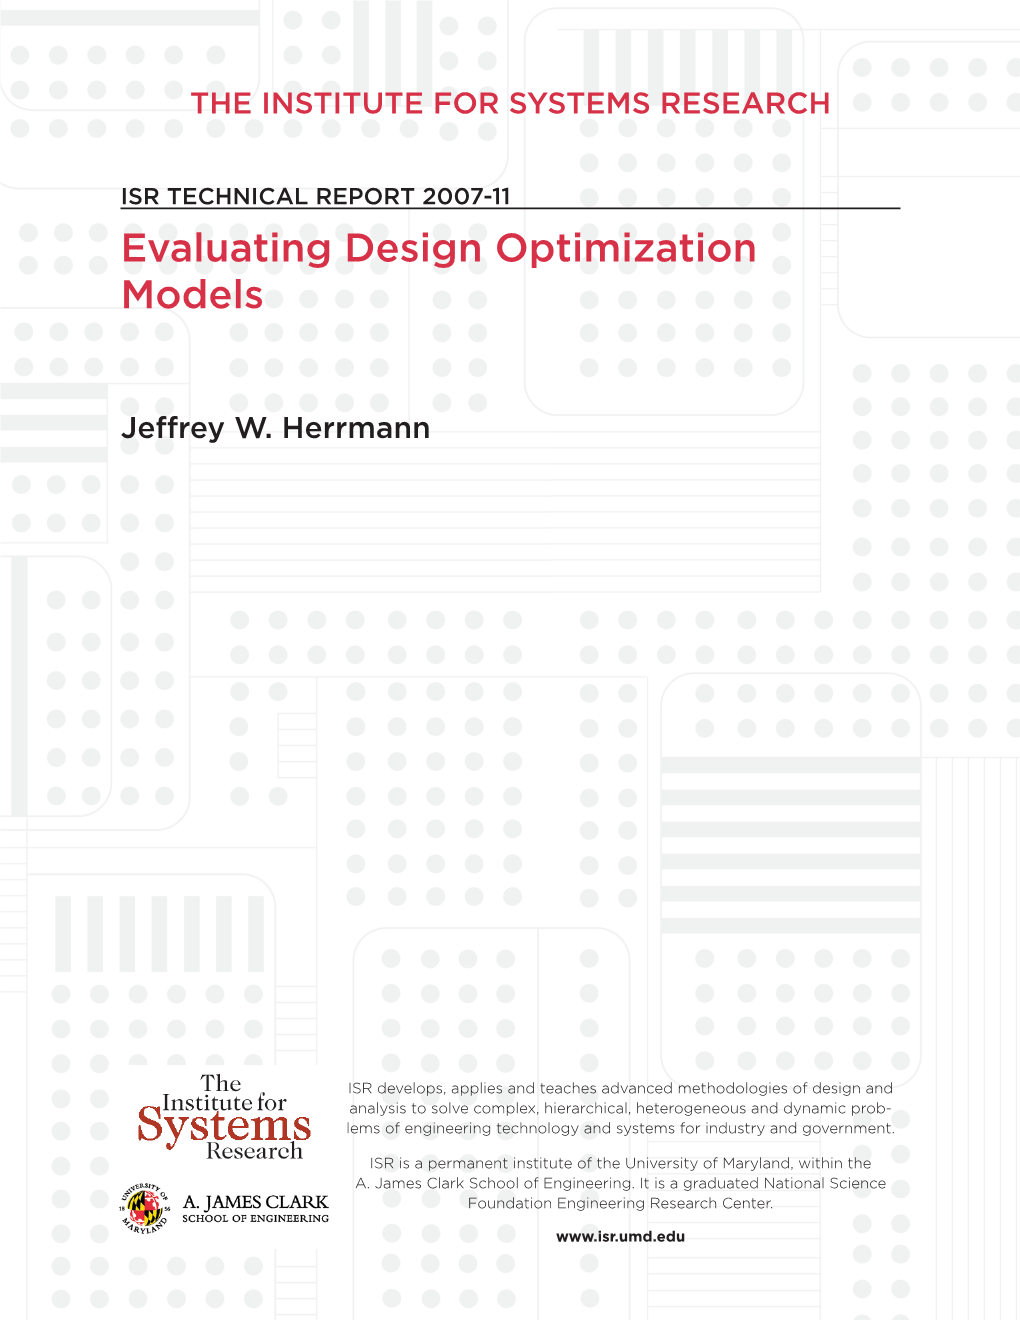 Evaluating Design Optimization Models